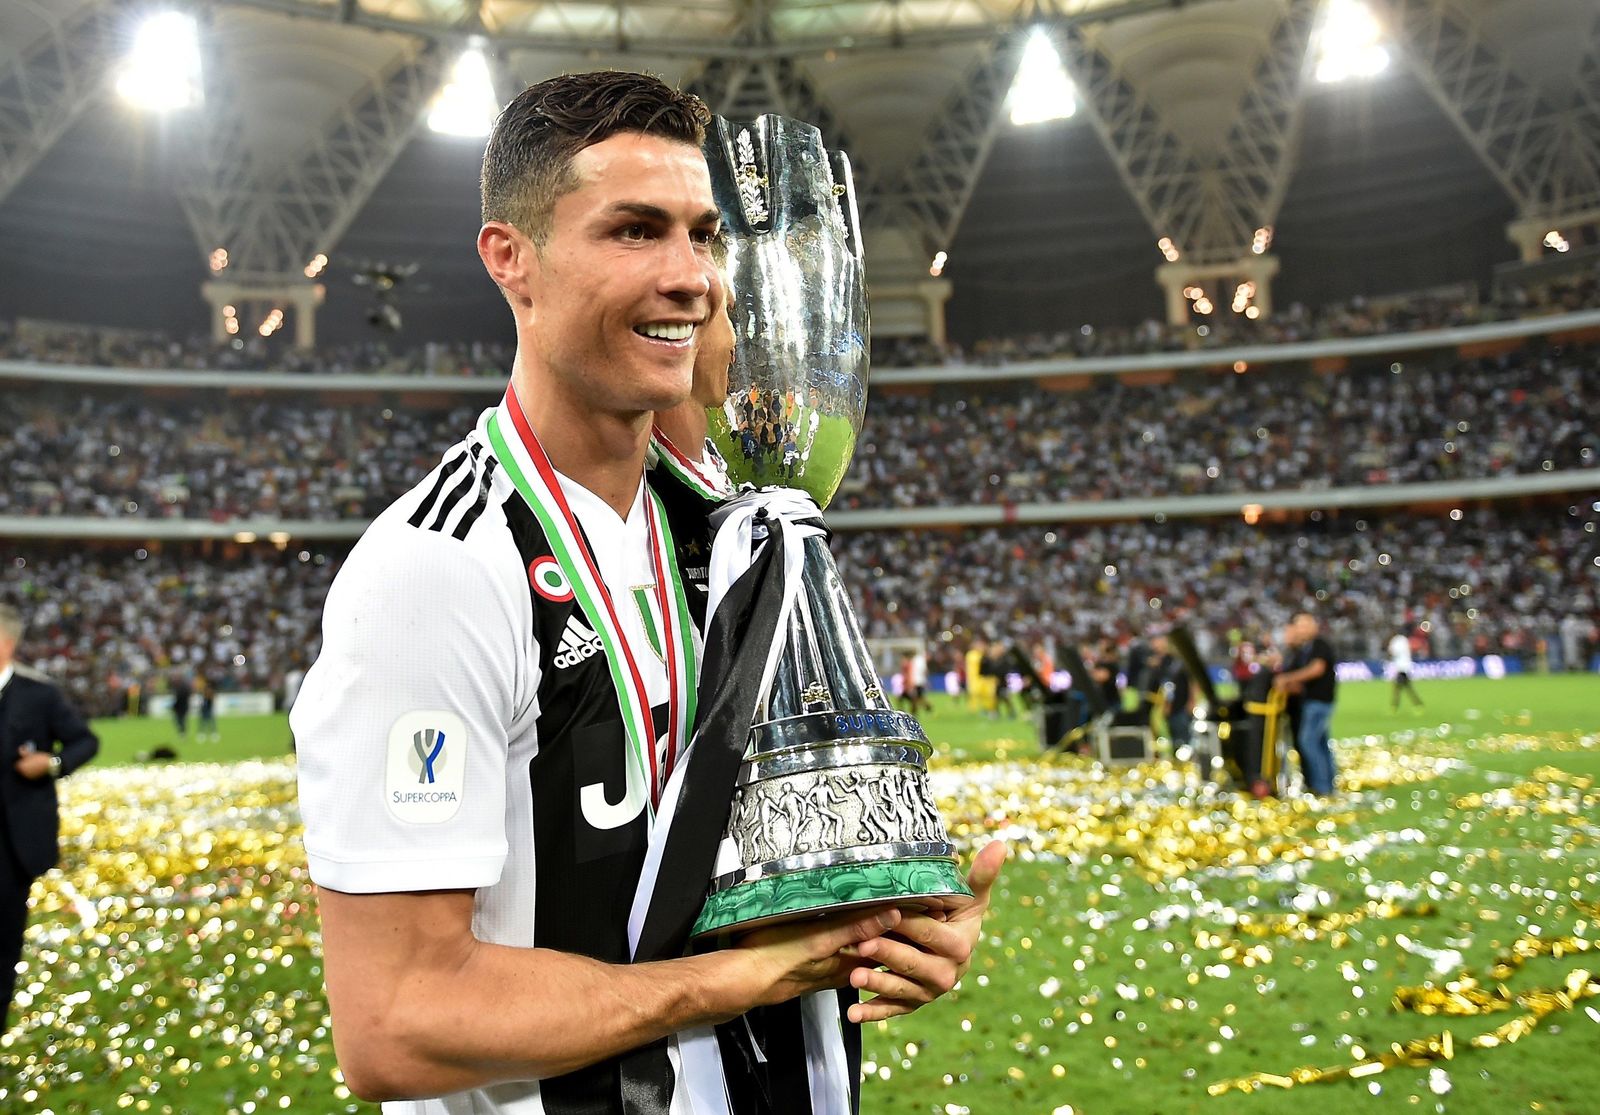 Cristiano Ronaldo, ahora con Juventus, celebra la victoria de la Supercopa italiana luego de vencer al Milan en el estadio King Abdullah de Yeda (Arabia Saudí). El portugués anotó el gol decisivo para ganar 1-0 y conquistar su primer título como juventino.